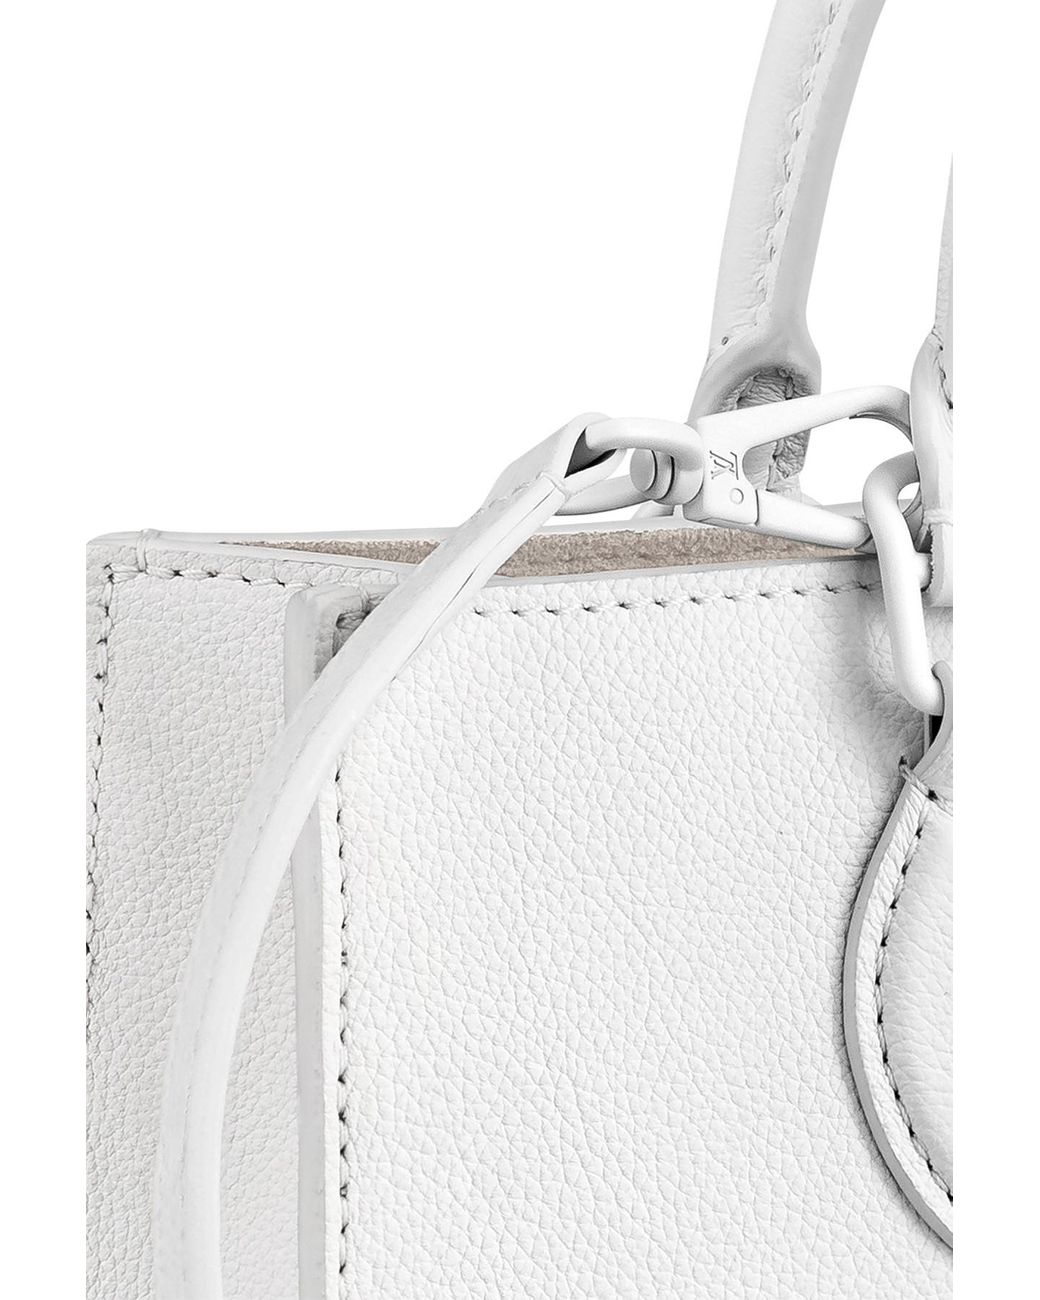 RvceShops Revival, White Louis Vuitton Lockme Go Tote Bag